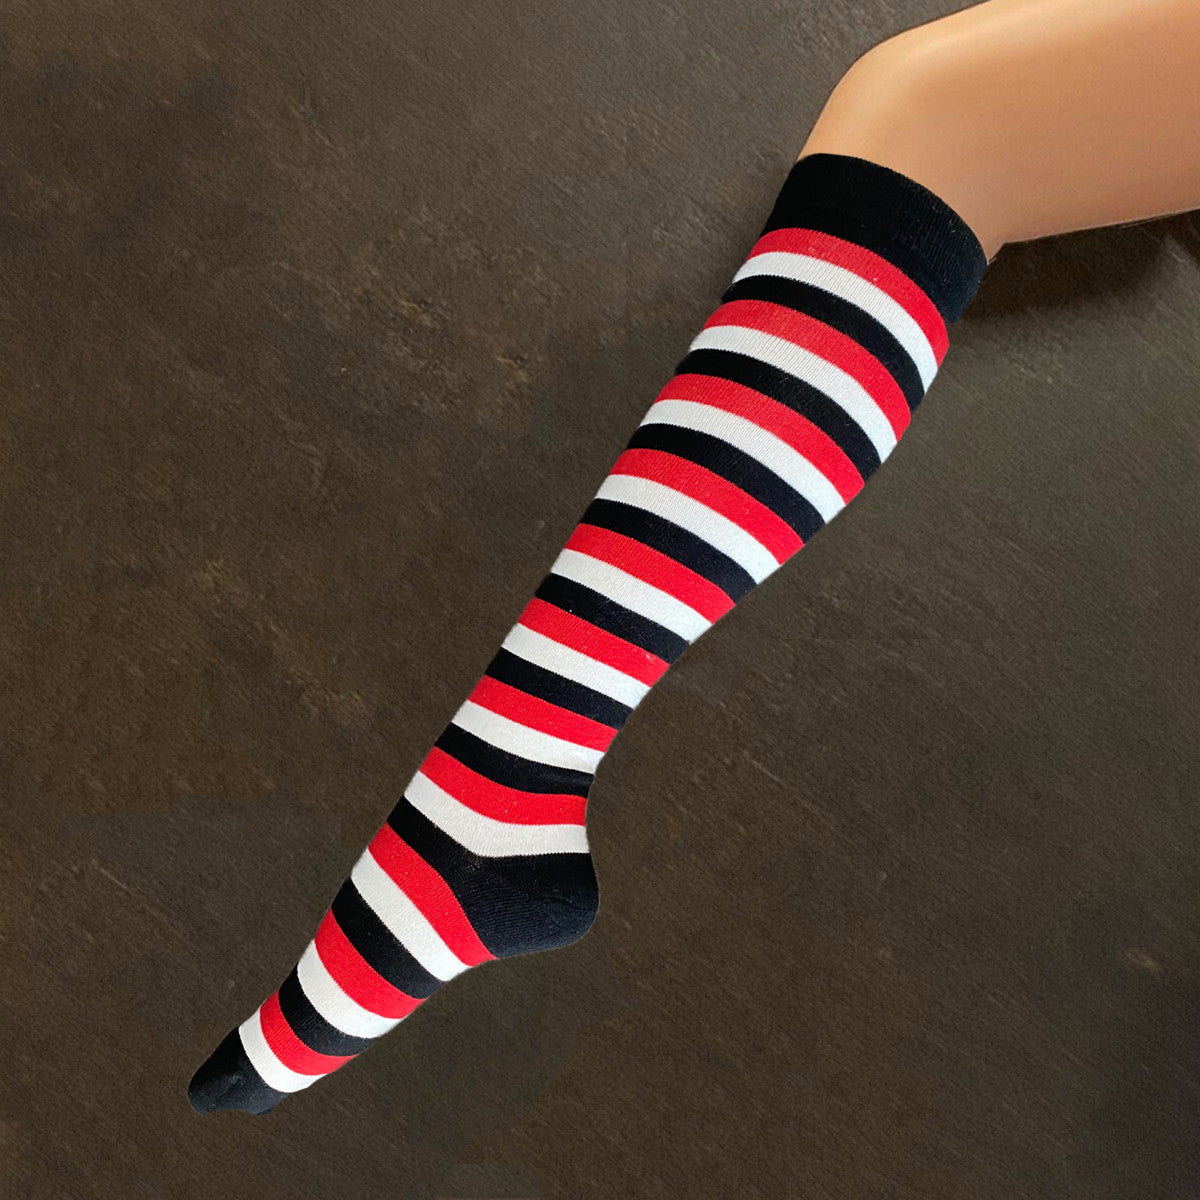 Socks - Red, White & Black Stripe